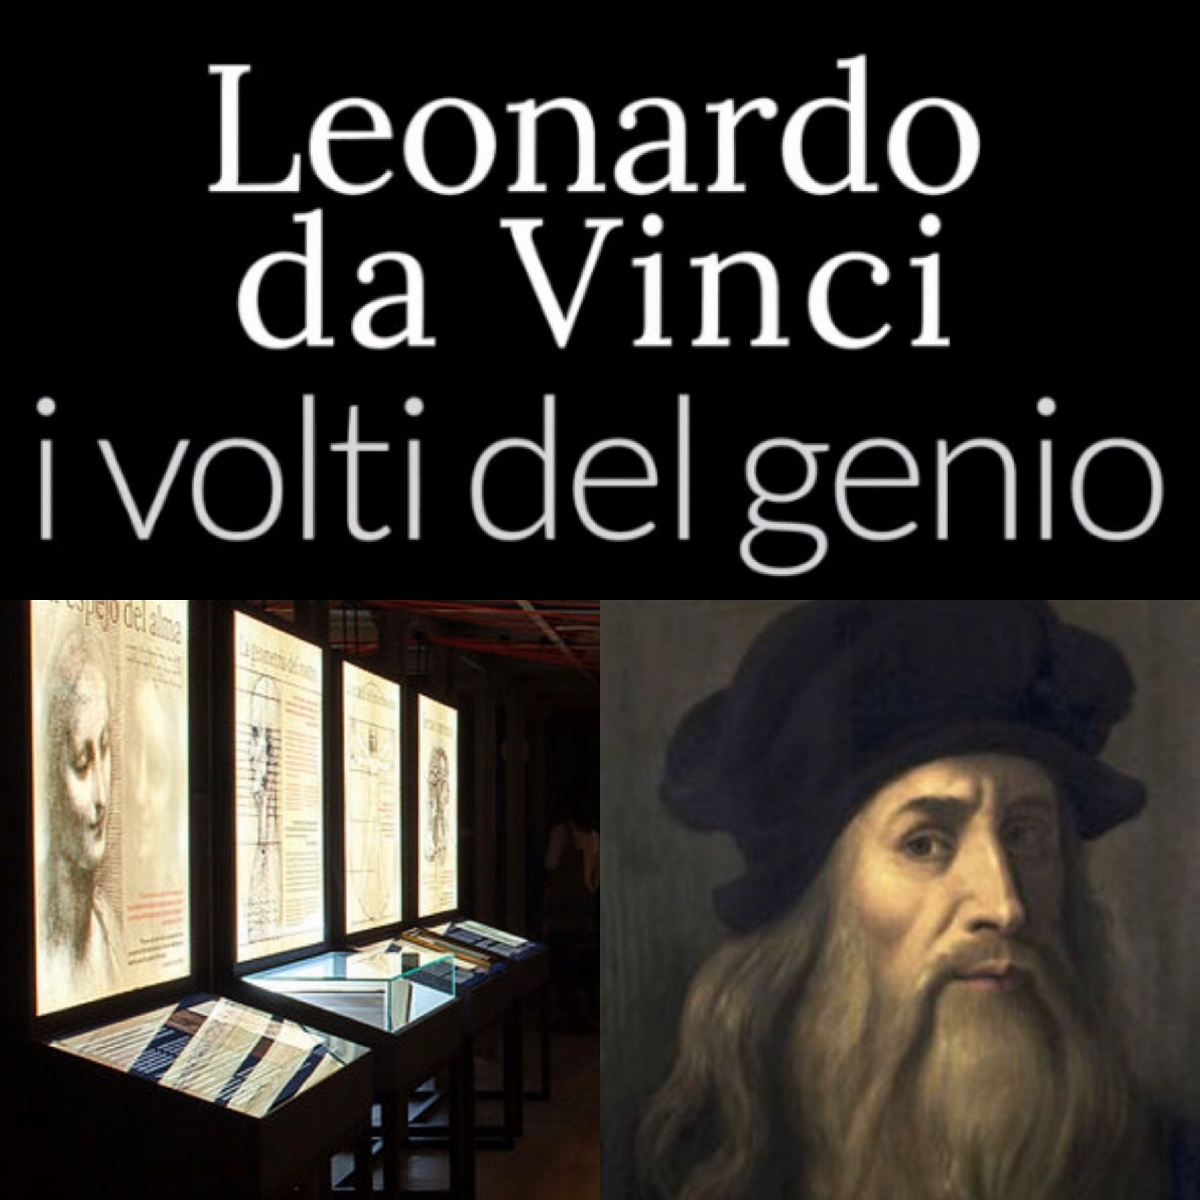 Leonardo da Vinci i volti del genio